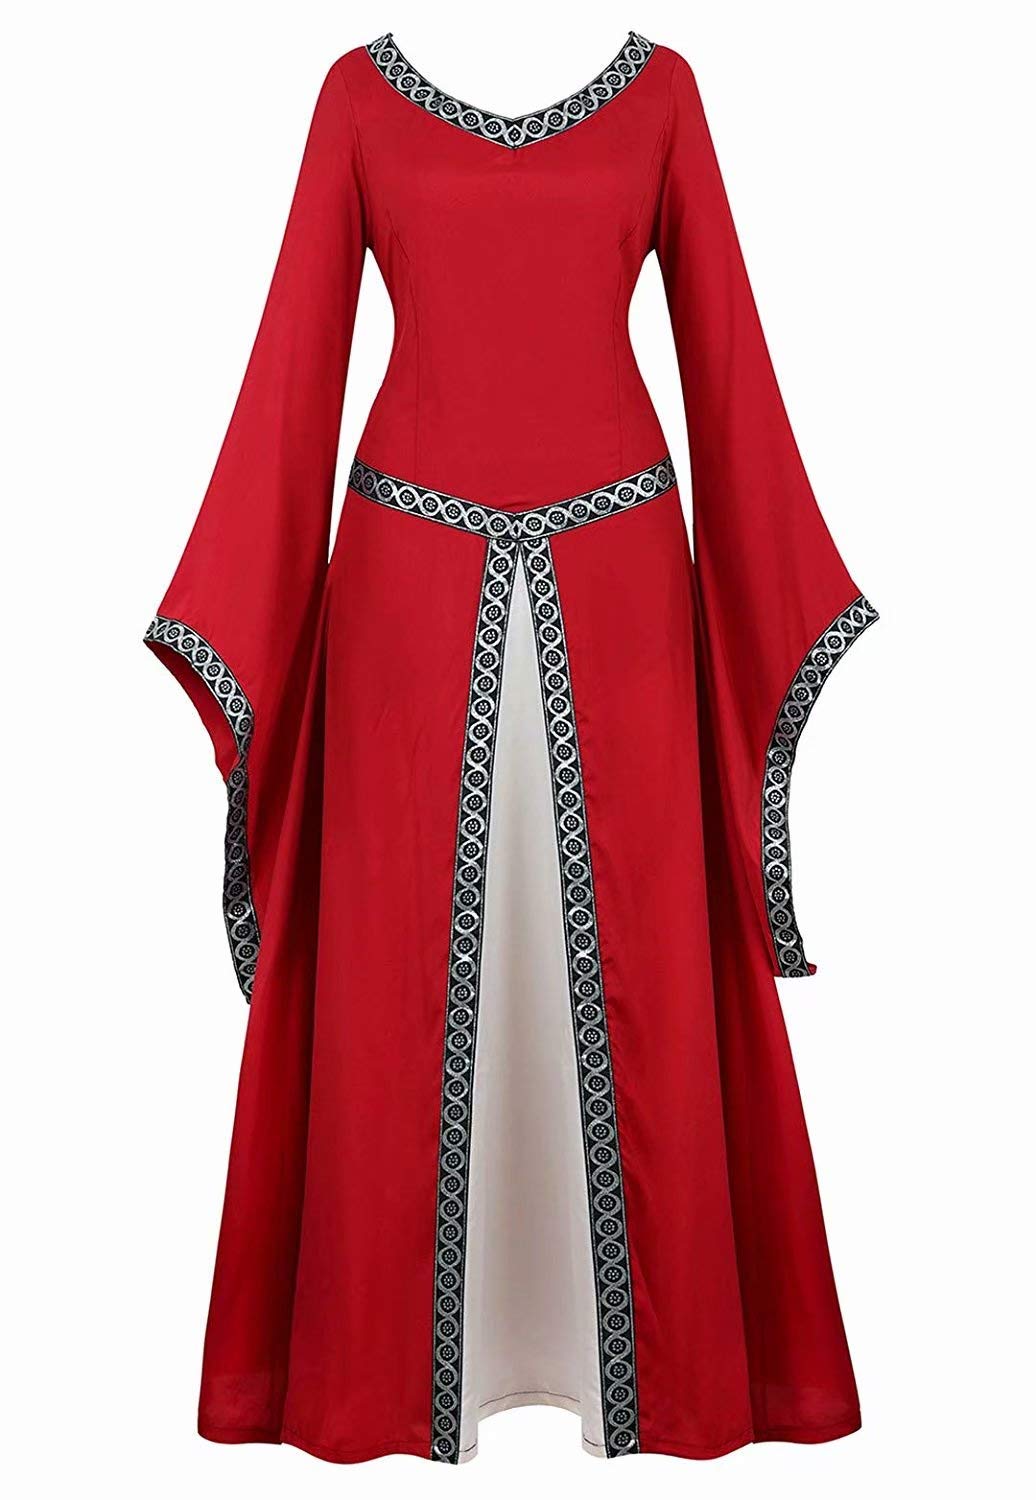 Josamogre mittelalter Kleid kleidung renaissance mit Trompetenärmel Party Kostüm bodenlang Vintage Retro costume cosplay Damen Rot M